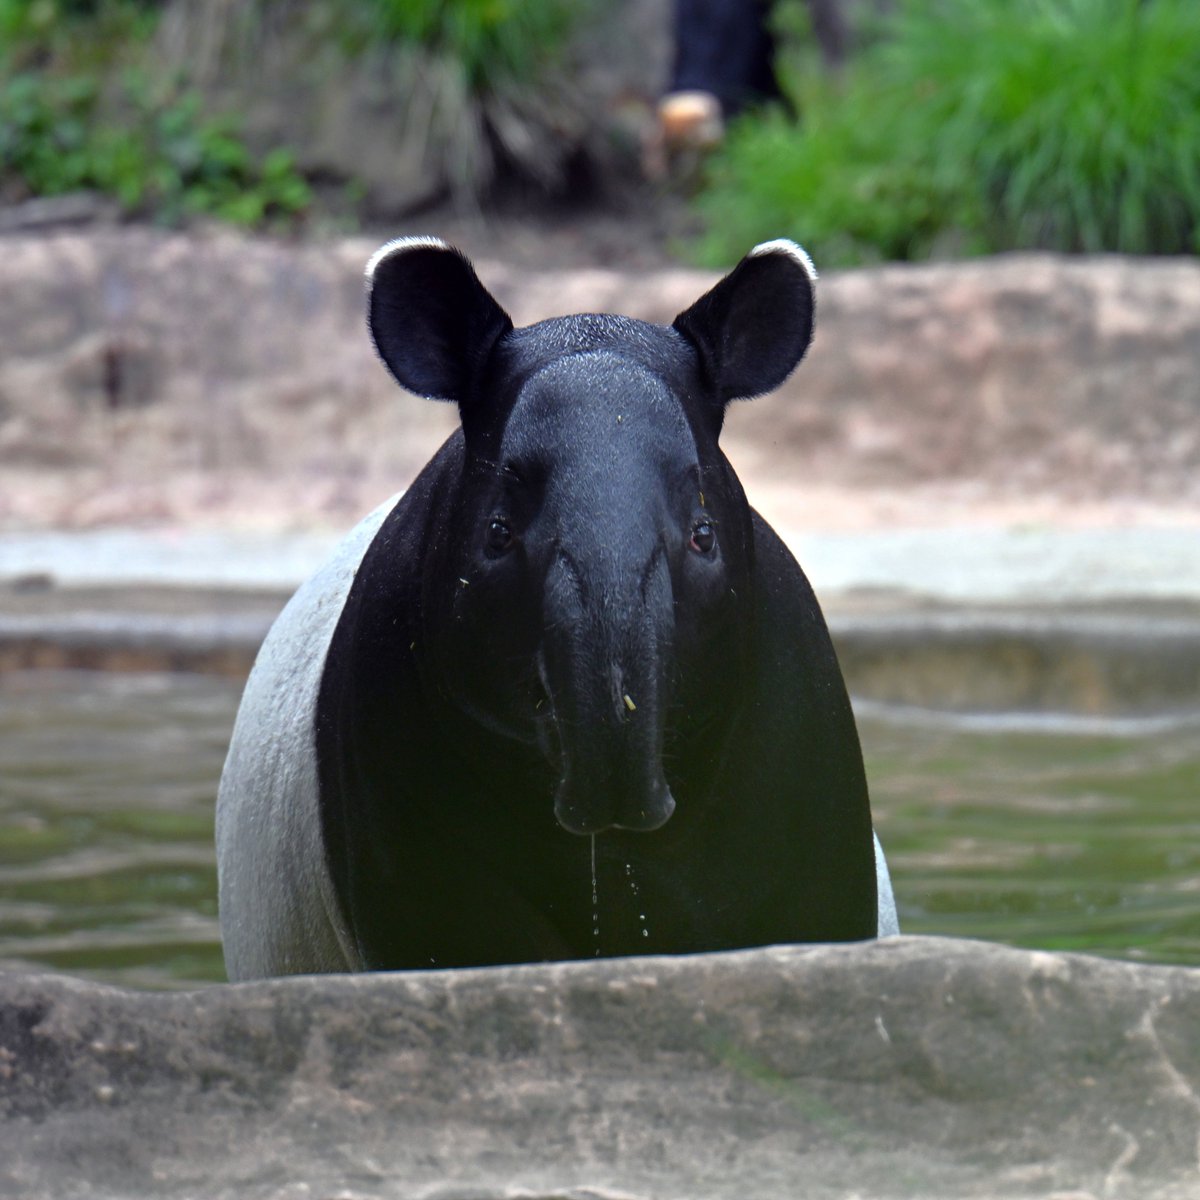 自分を守るため個体名は記しませんが
Google レンズ で画像検索したら
「ひでお」と表示されました
#マレーバク #tapir #ズーラシア #ZOORASIA